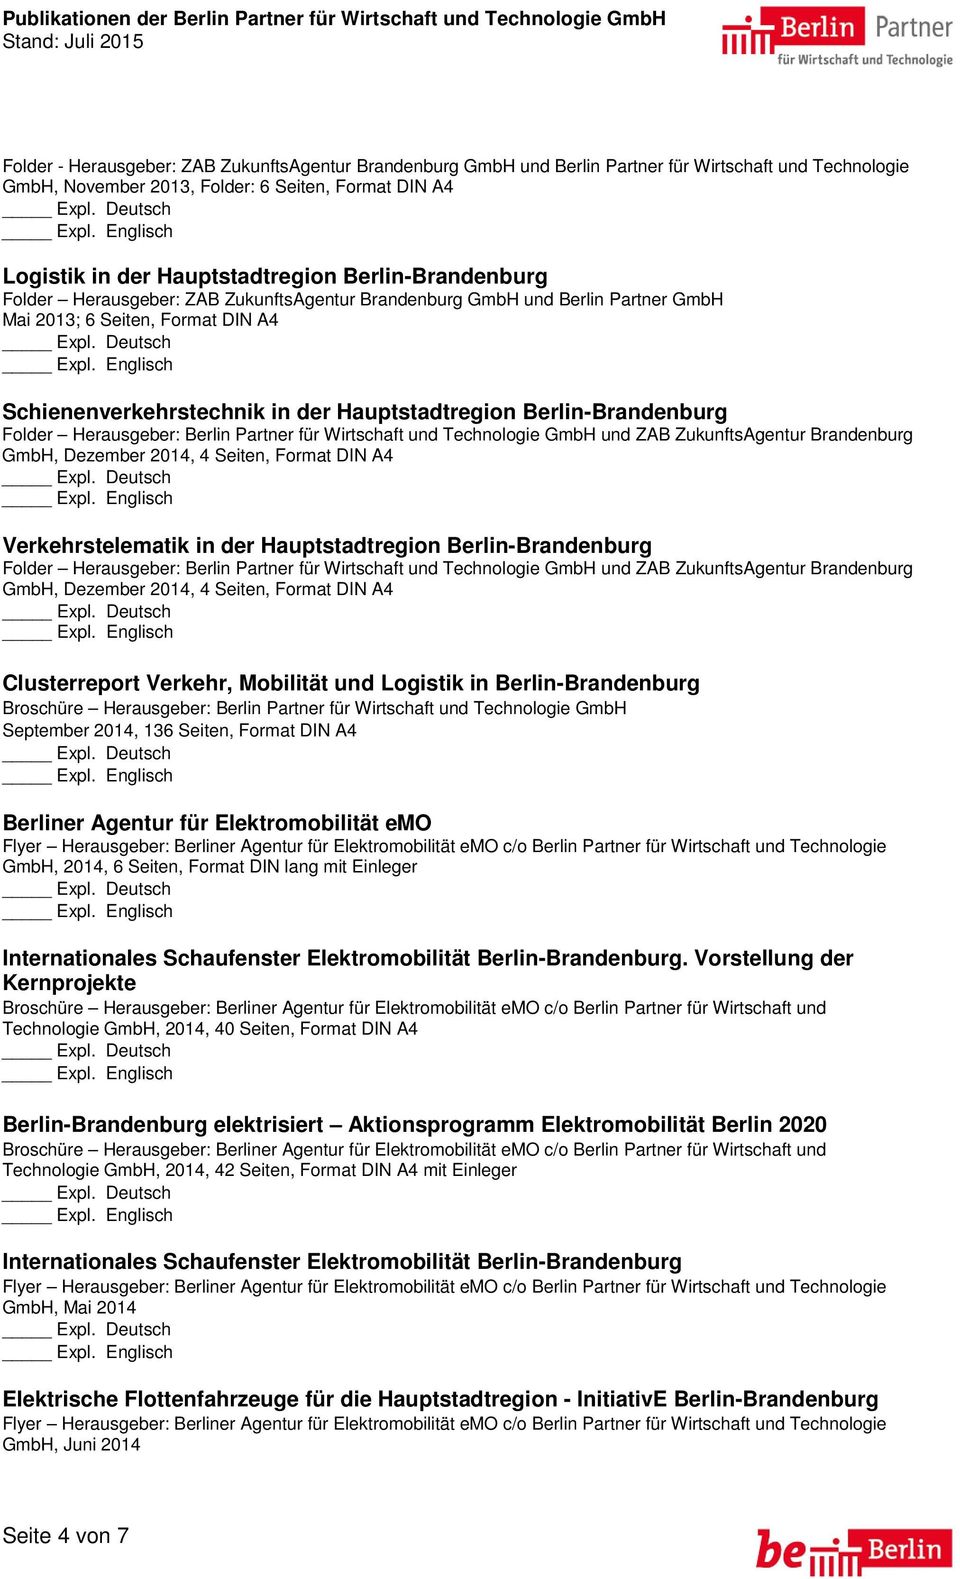 Berlin-Brandenburg Verkehrstelematik in der Hauptstadtregion Berlin-Brandenburg Clusterreport Verkehr, Mobilität und Logistik in Berlin-Brandenburg Broschüre Herausgeber: Berlin Partner für